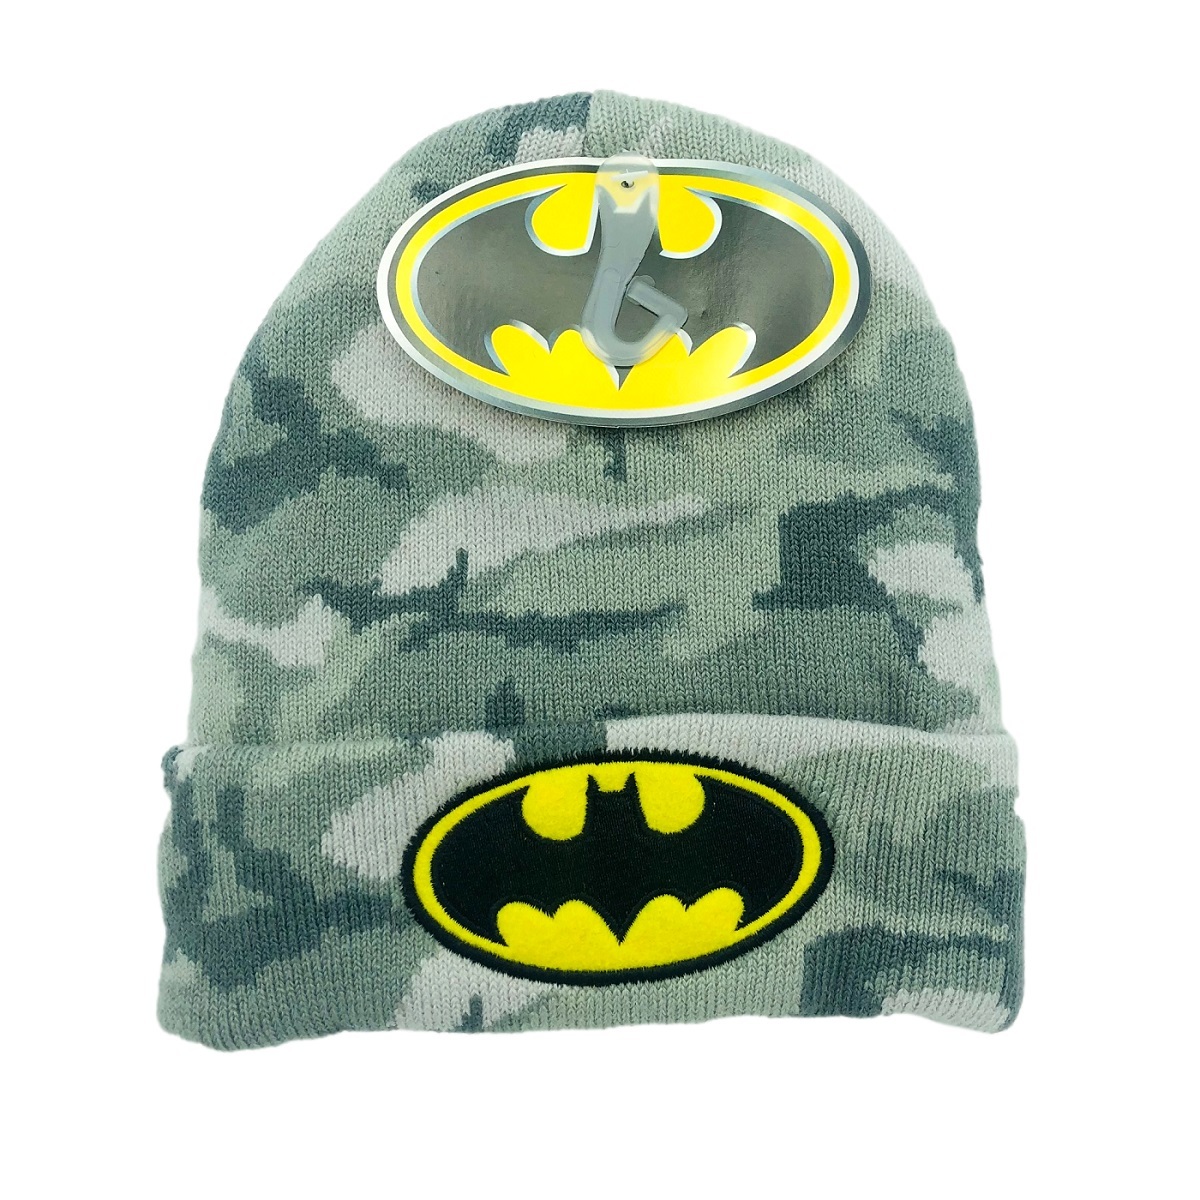 Wholesale Batman Hat & Glove Sets - Kid's